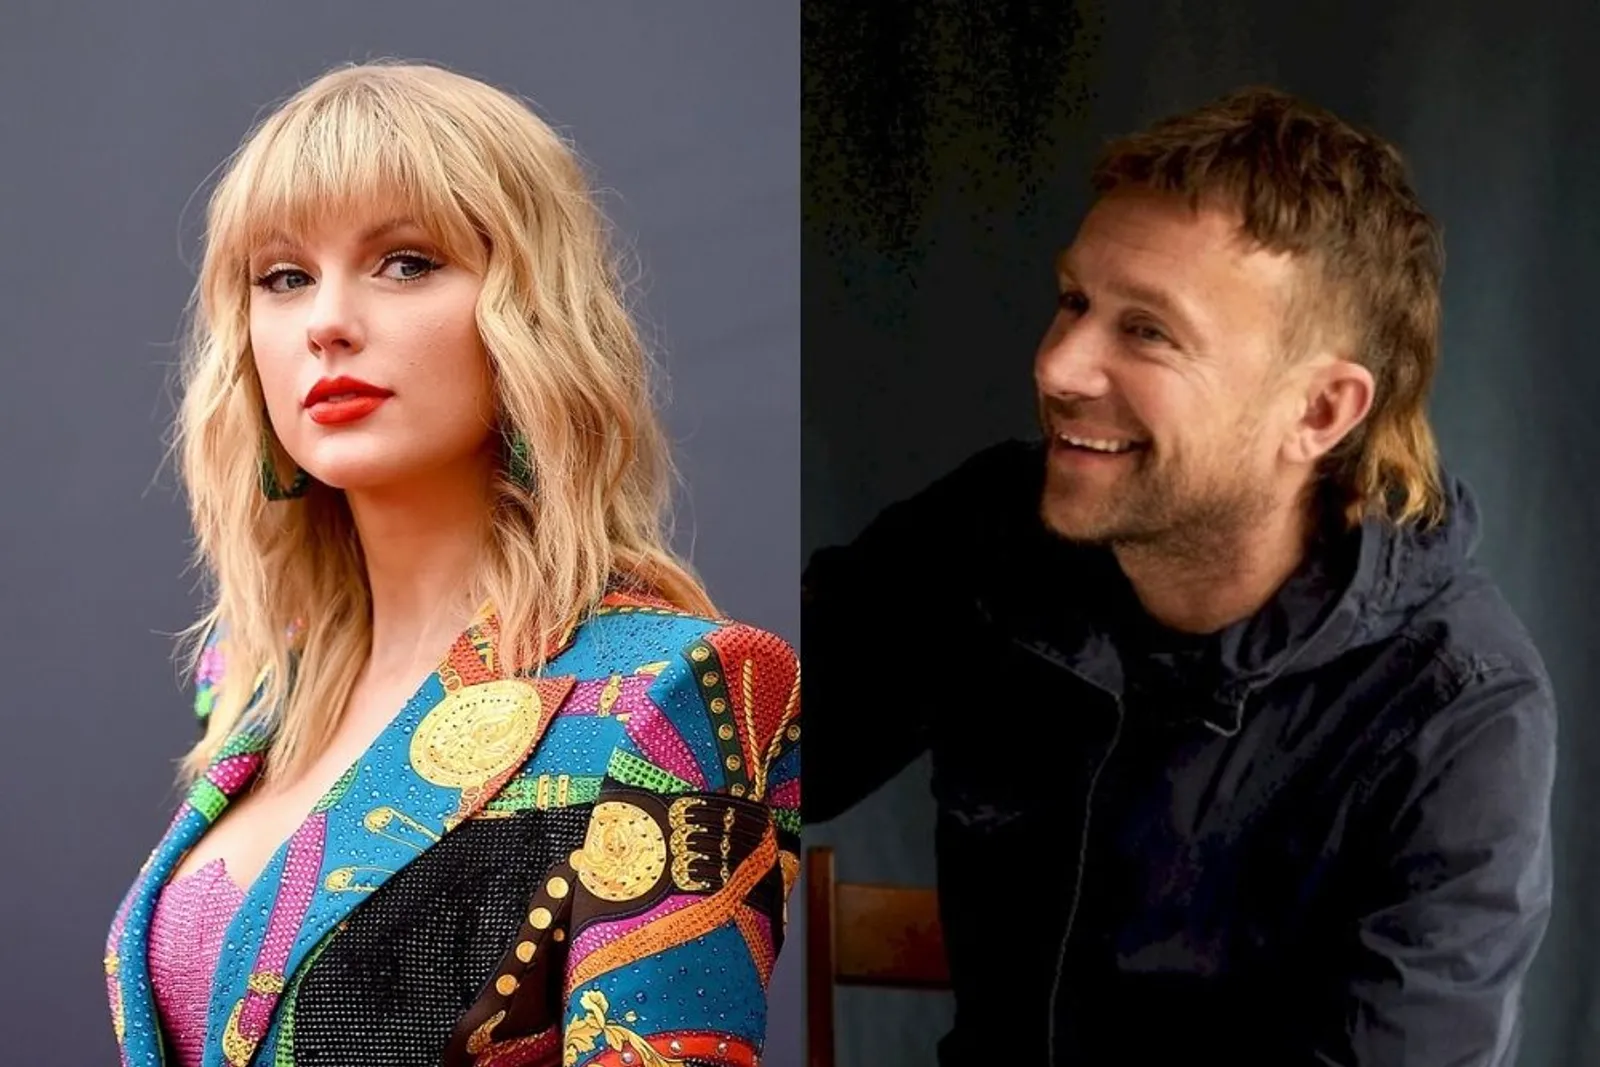 Dituding Damon Albarn Tak Tulis Lagu Sendiri, Taylor Swift: "F—ed Up"